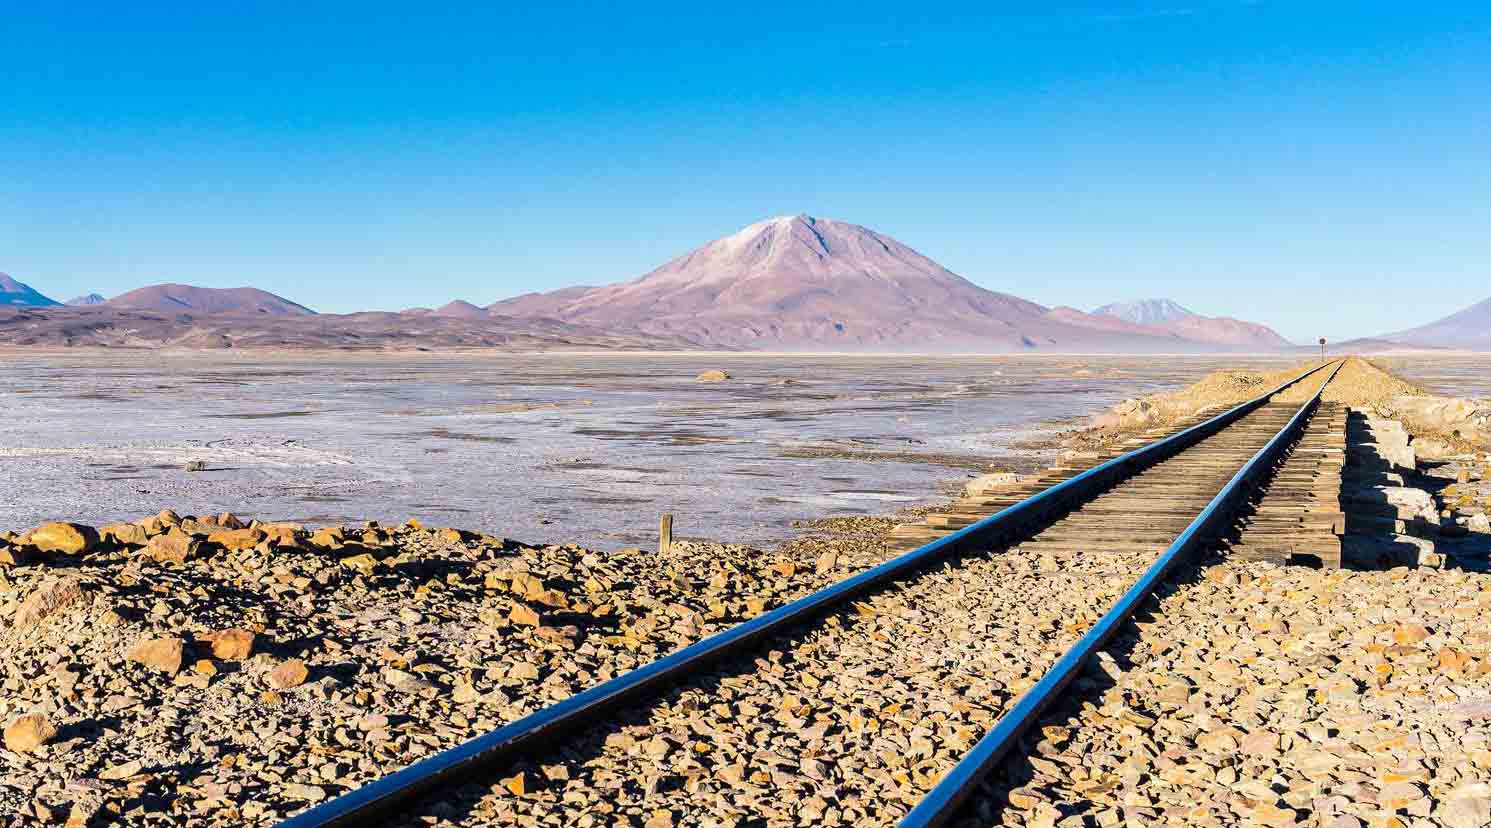 La línea de ferrocarril recibió como nombre "Corredor Ferroviario Bioceánico de Integración" y cruzará Brasil, Bolivia y Perú